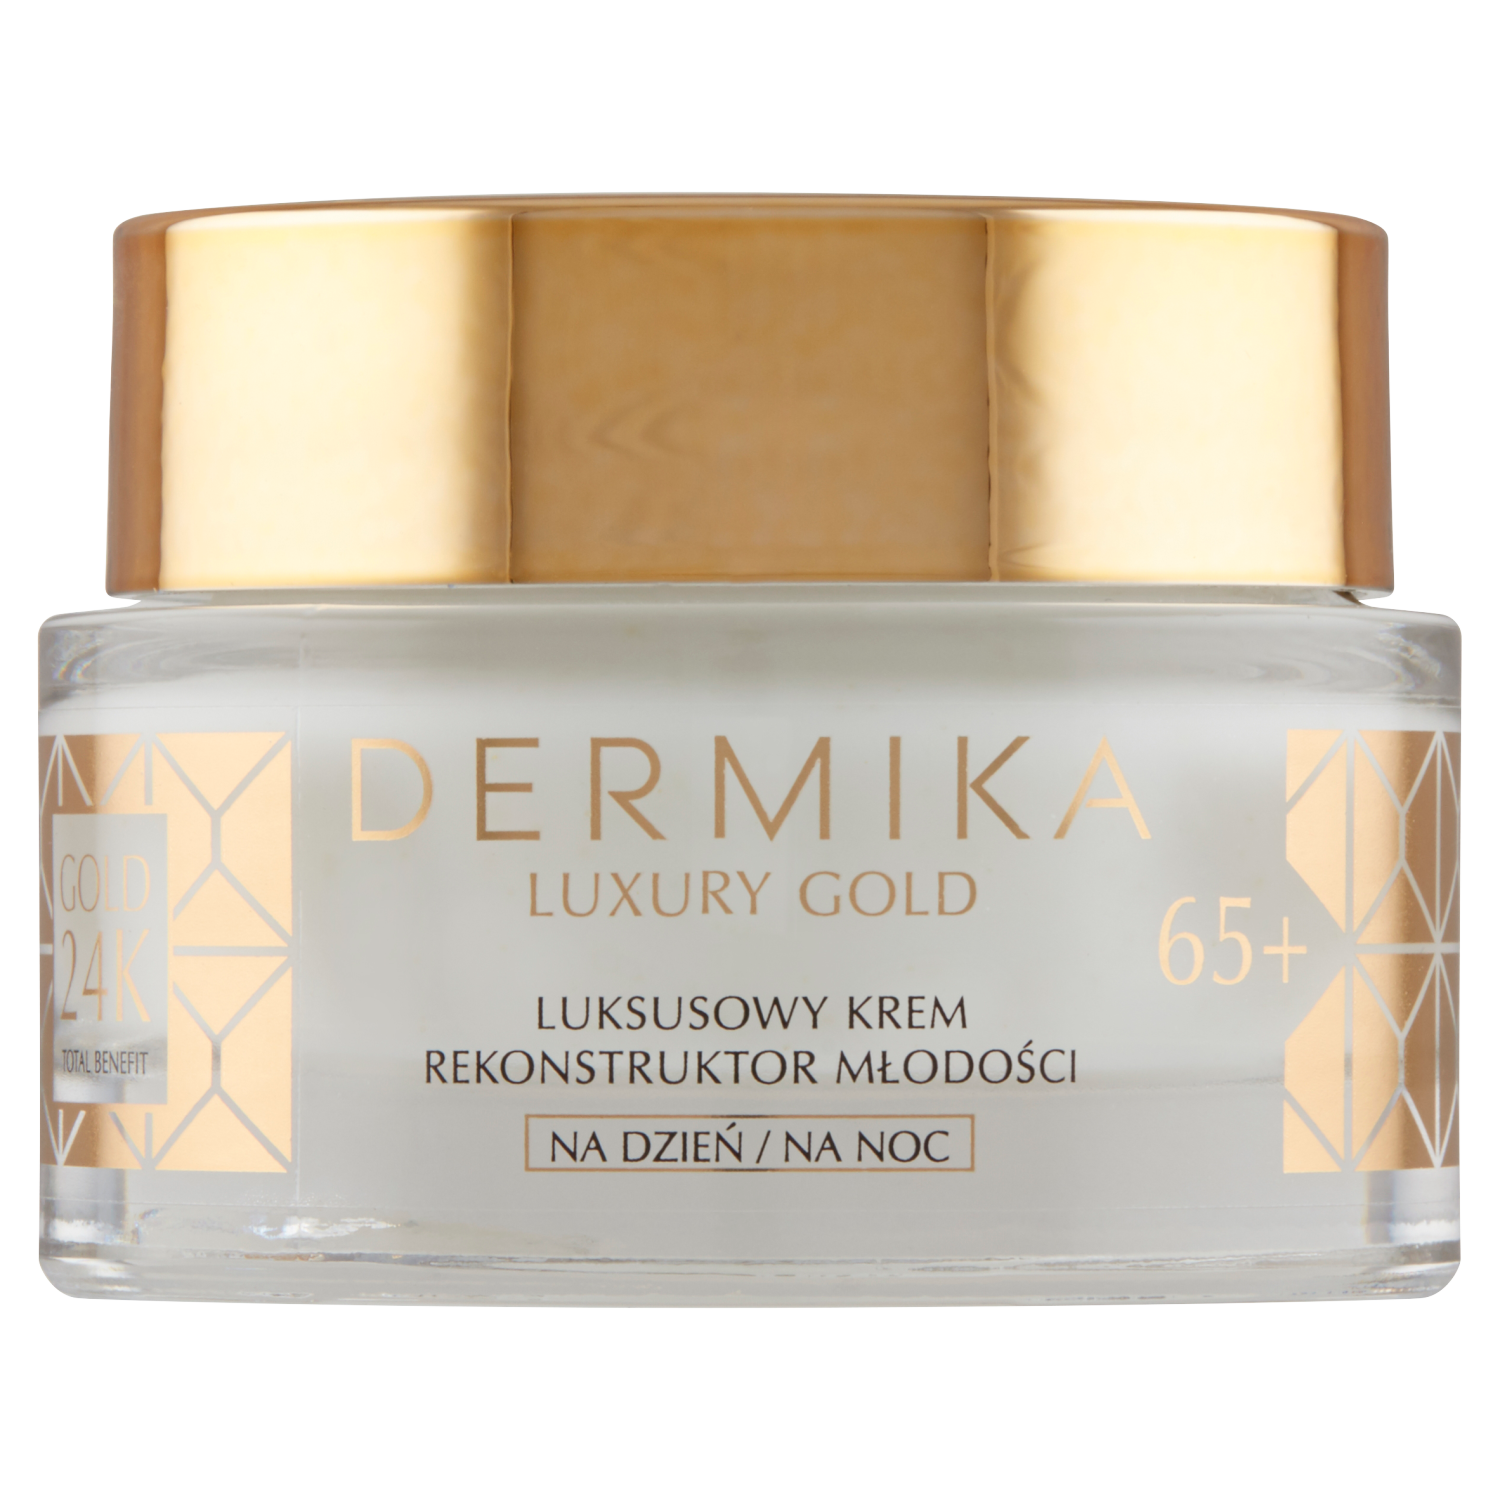 Dermika Gold 24k дневной и ночной крем для лица восстанавливающий молодость 65+, 50 мл